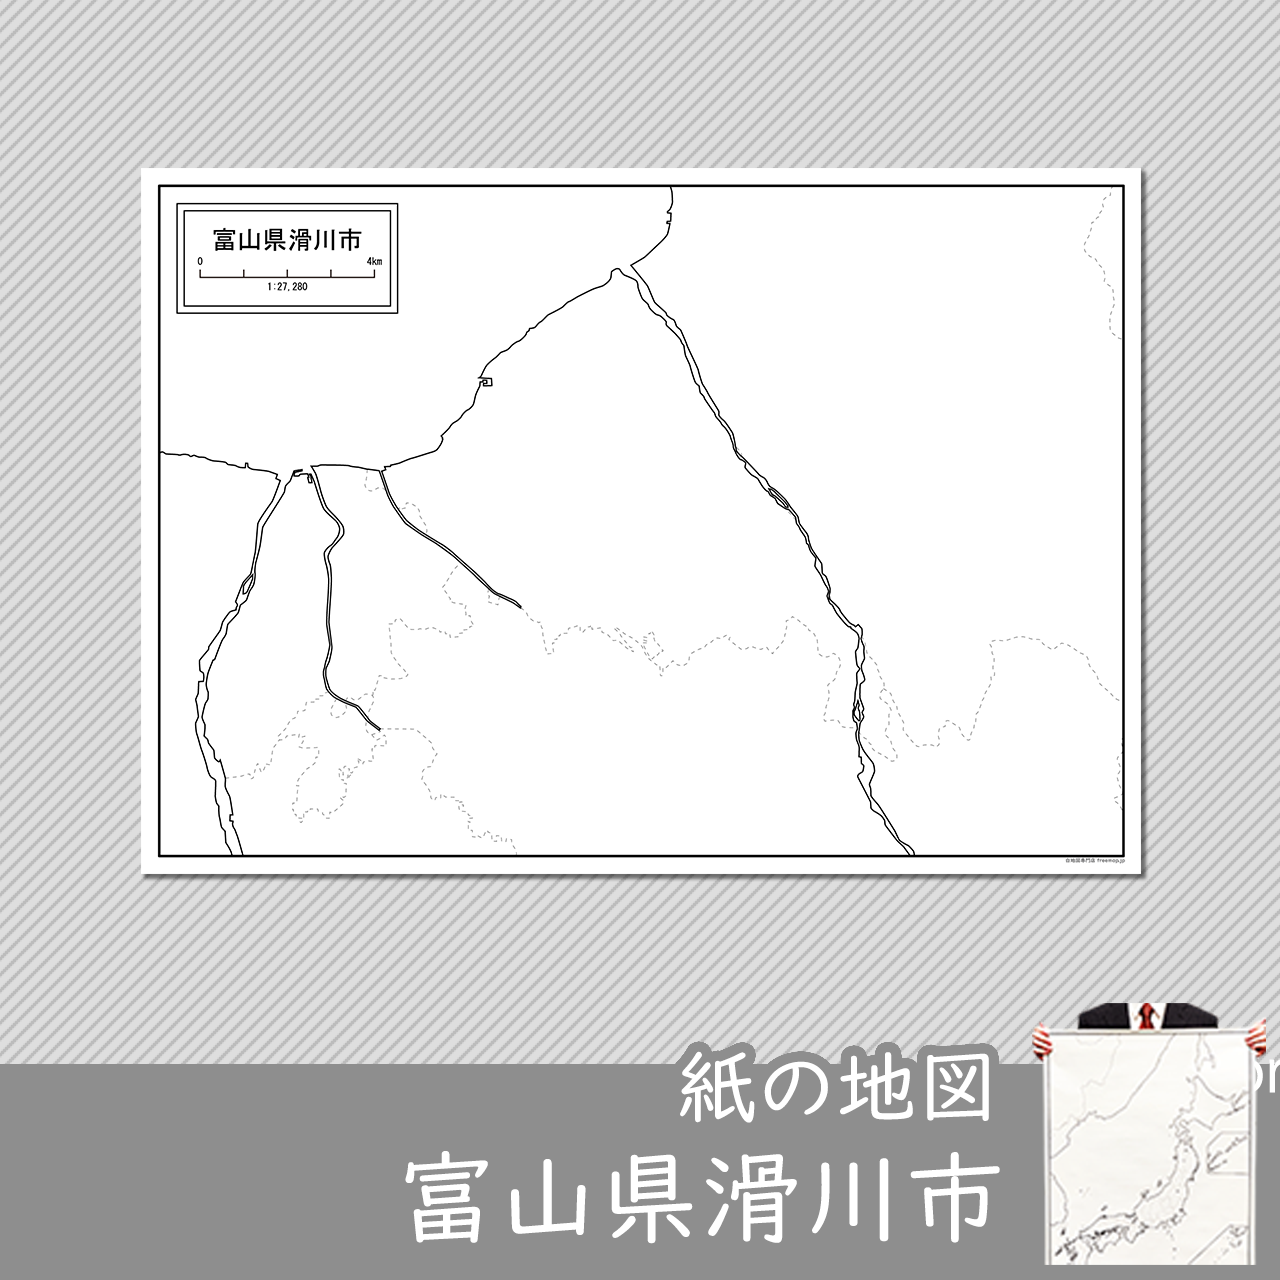 滑川市の紙の白地図のサムネイル